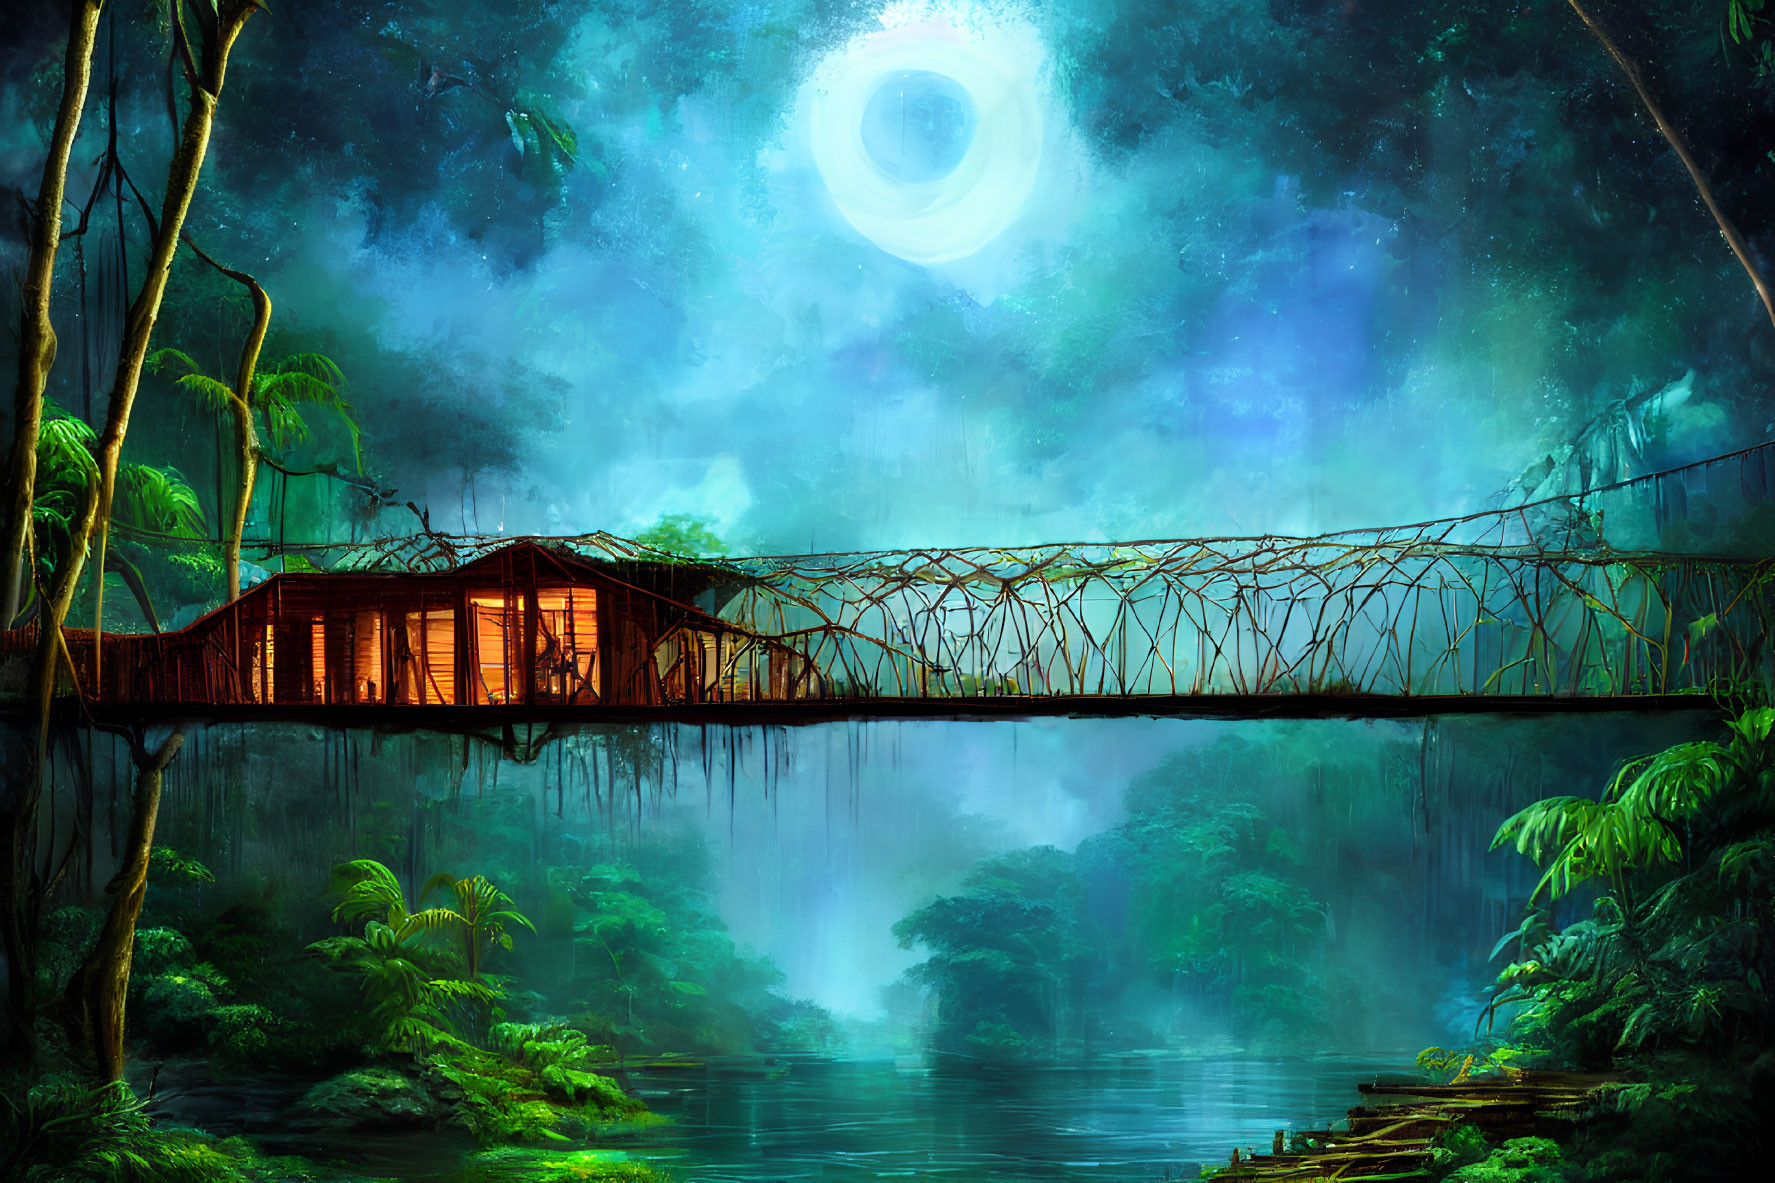 Surreal jungle scene with wooden cabin on suspension bridge